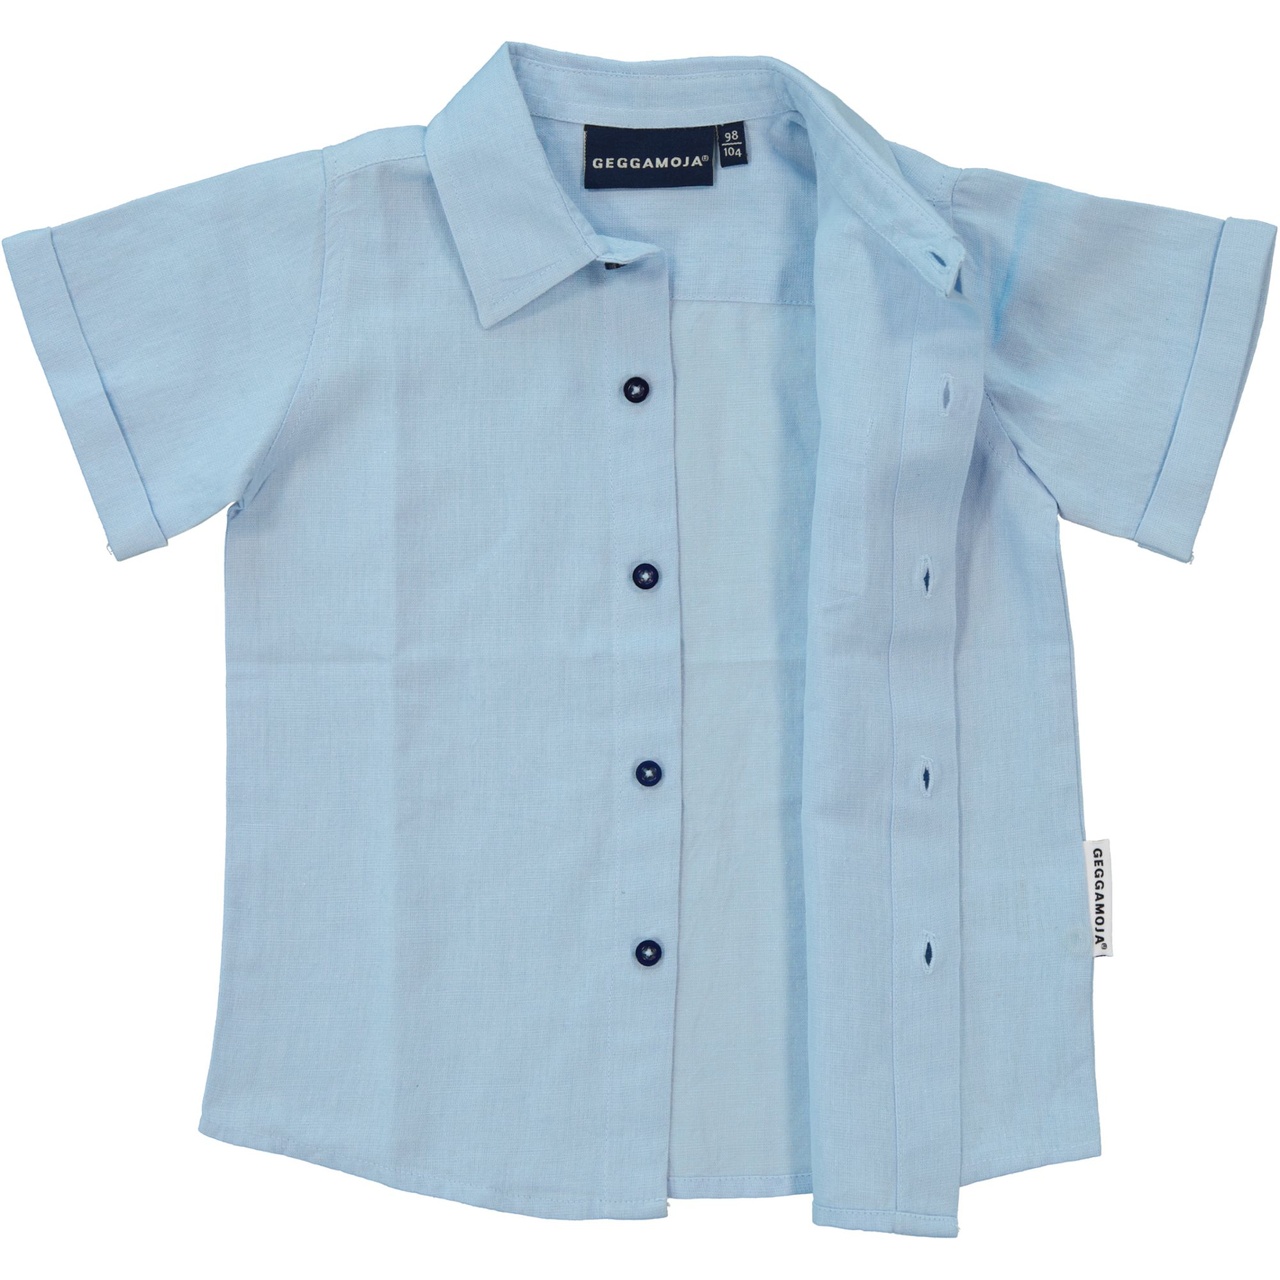 Linnen Shirt S.S Light blue 74/80